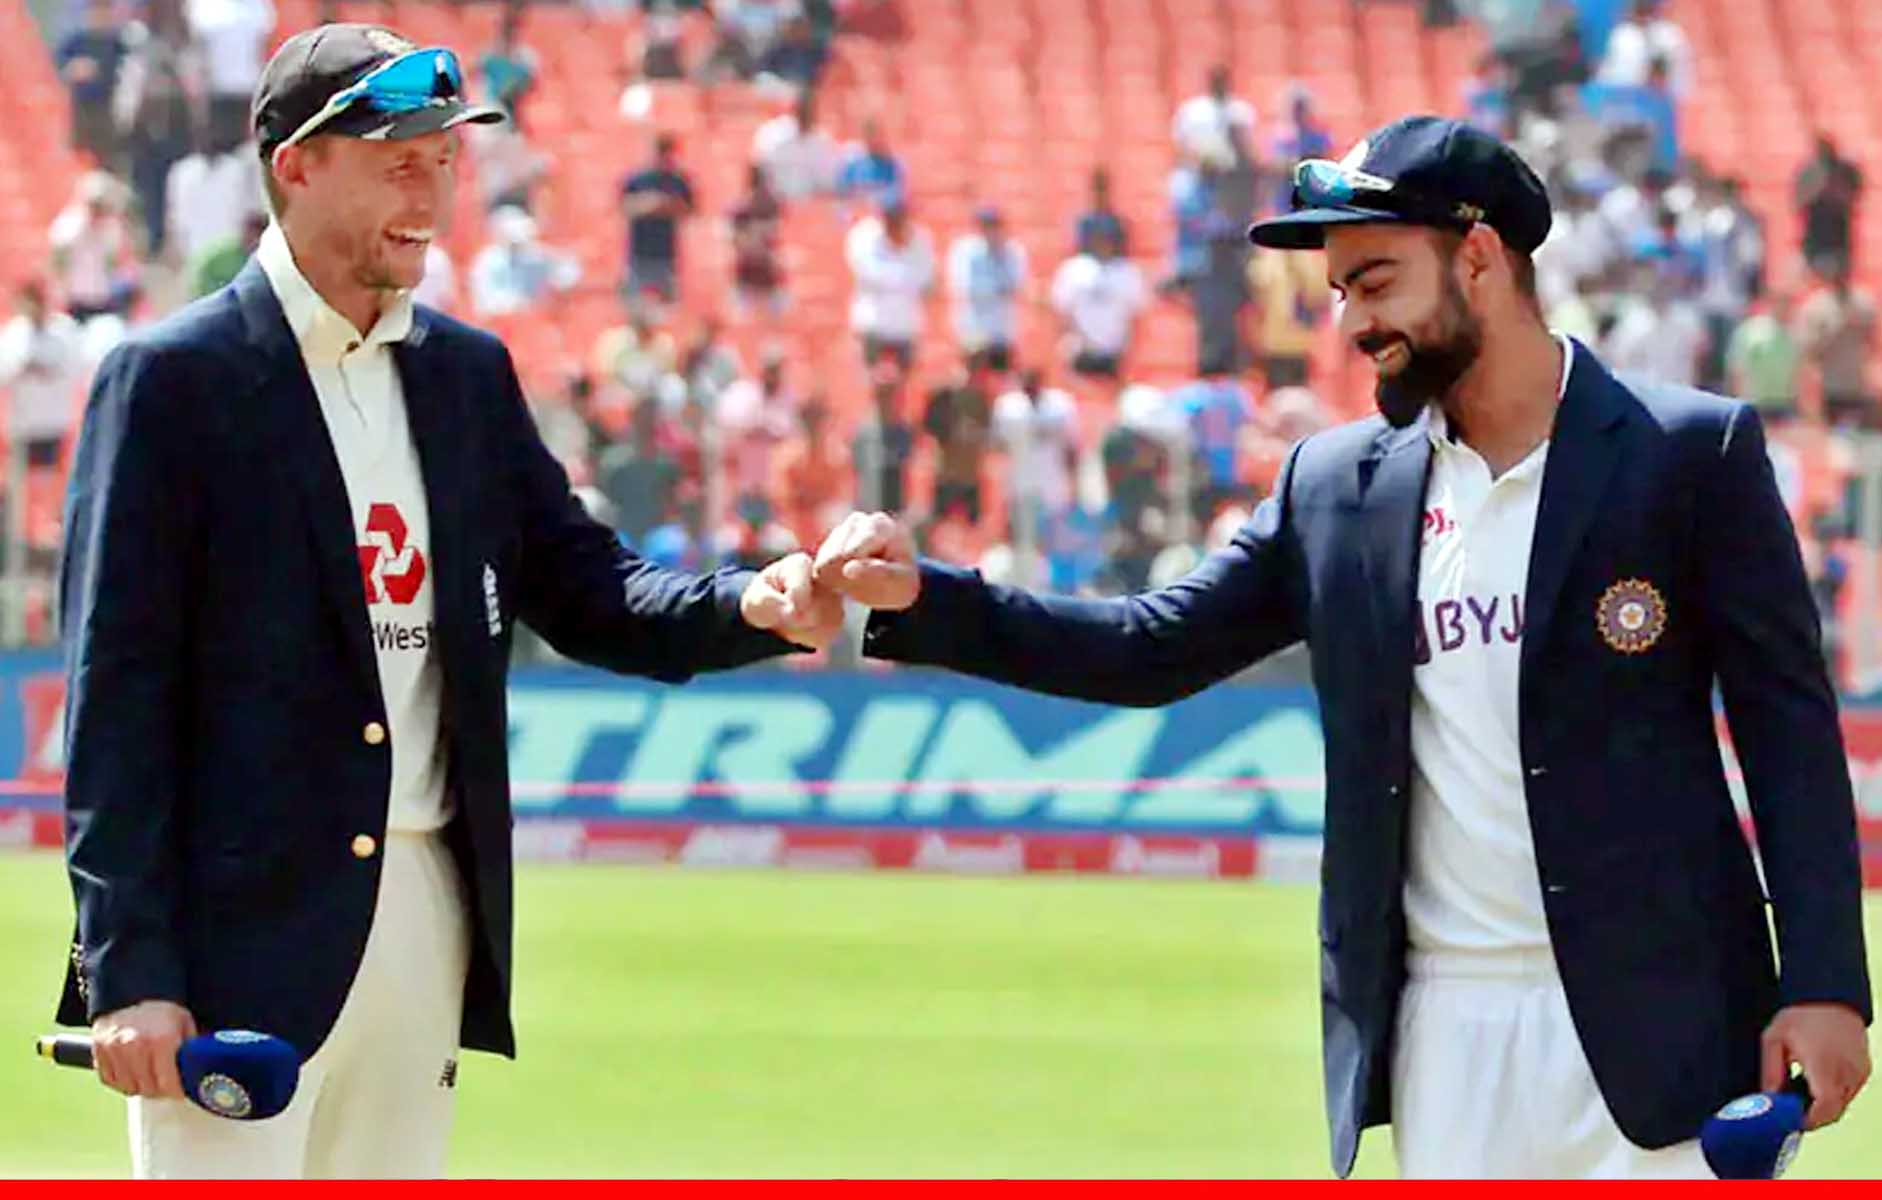 भारत के खिलाफ पहले दो टेस्ट के लिए इंग्लिश टीम घोषित, जोफ्रा आर्चर बाहर